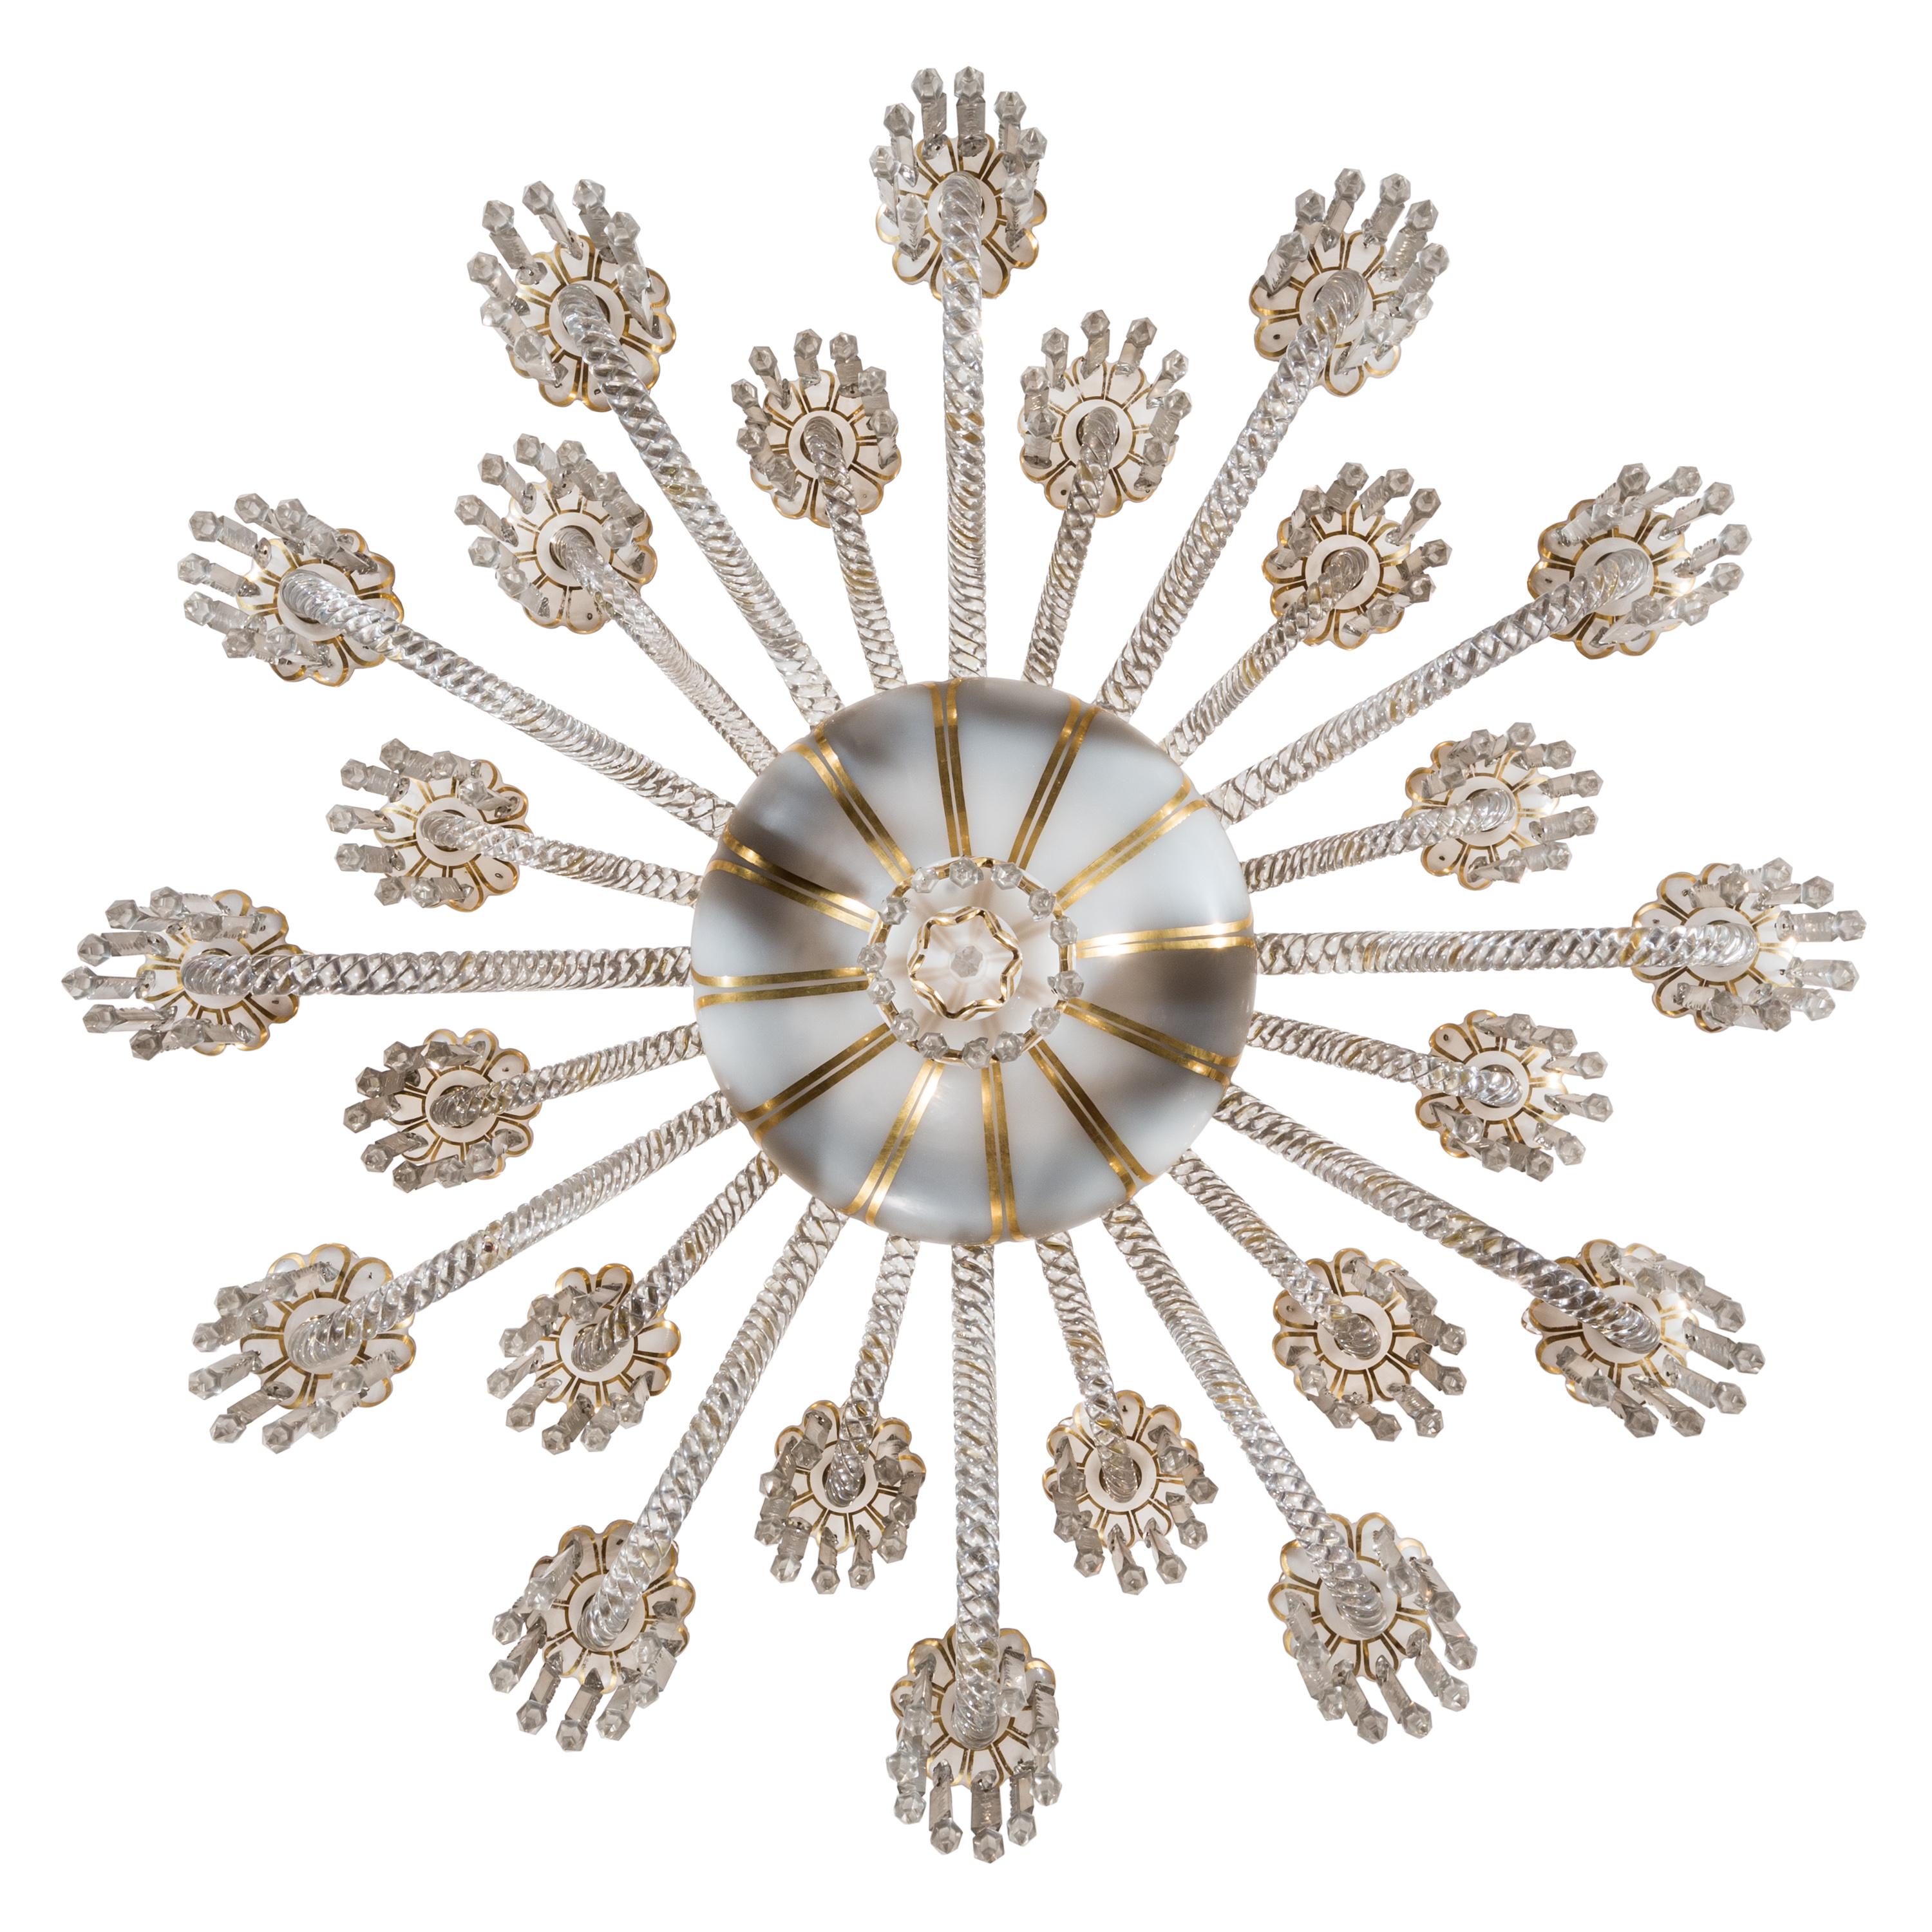 Spektakulär und wirklich selten. Der vierfache tulpenförmige Baluster (oder die zentrale Säule) dieser Lampe ist eine klassische opale Kronleuchterform und ahmt die Form einer Blumenvase mit Fuß nach. Diese Form wurde von ca. 1840 bis in die 1870er